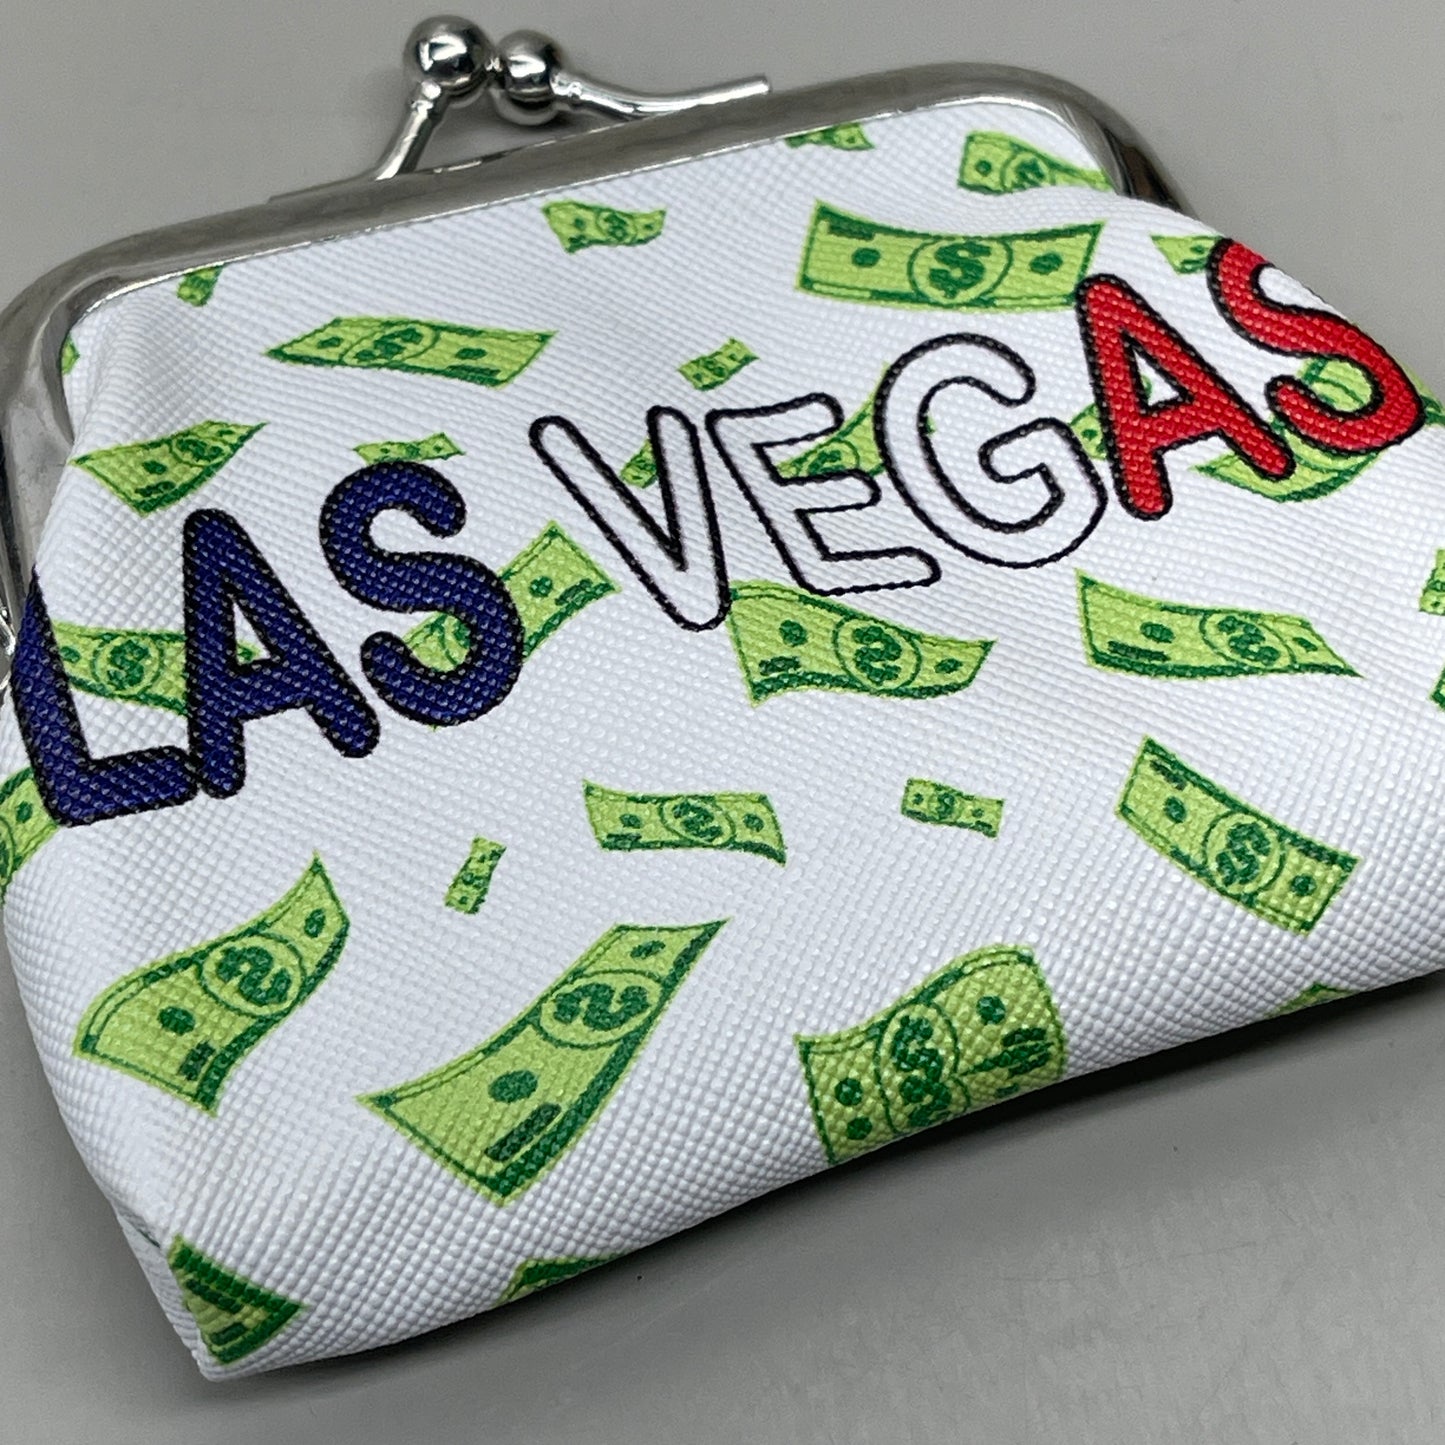 LAS VEGAS 3-PACK! Welcome to Fabulous Las Vegas Coin Purse Souvenirs 4" x 4" Money